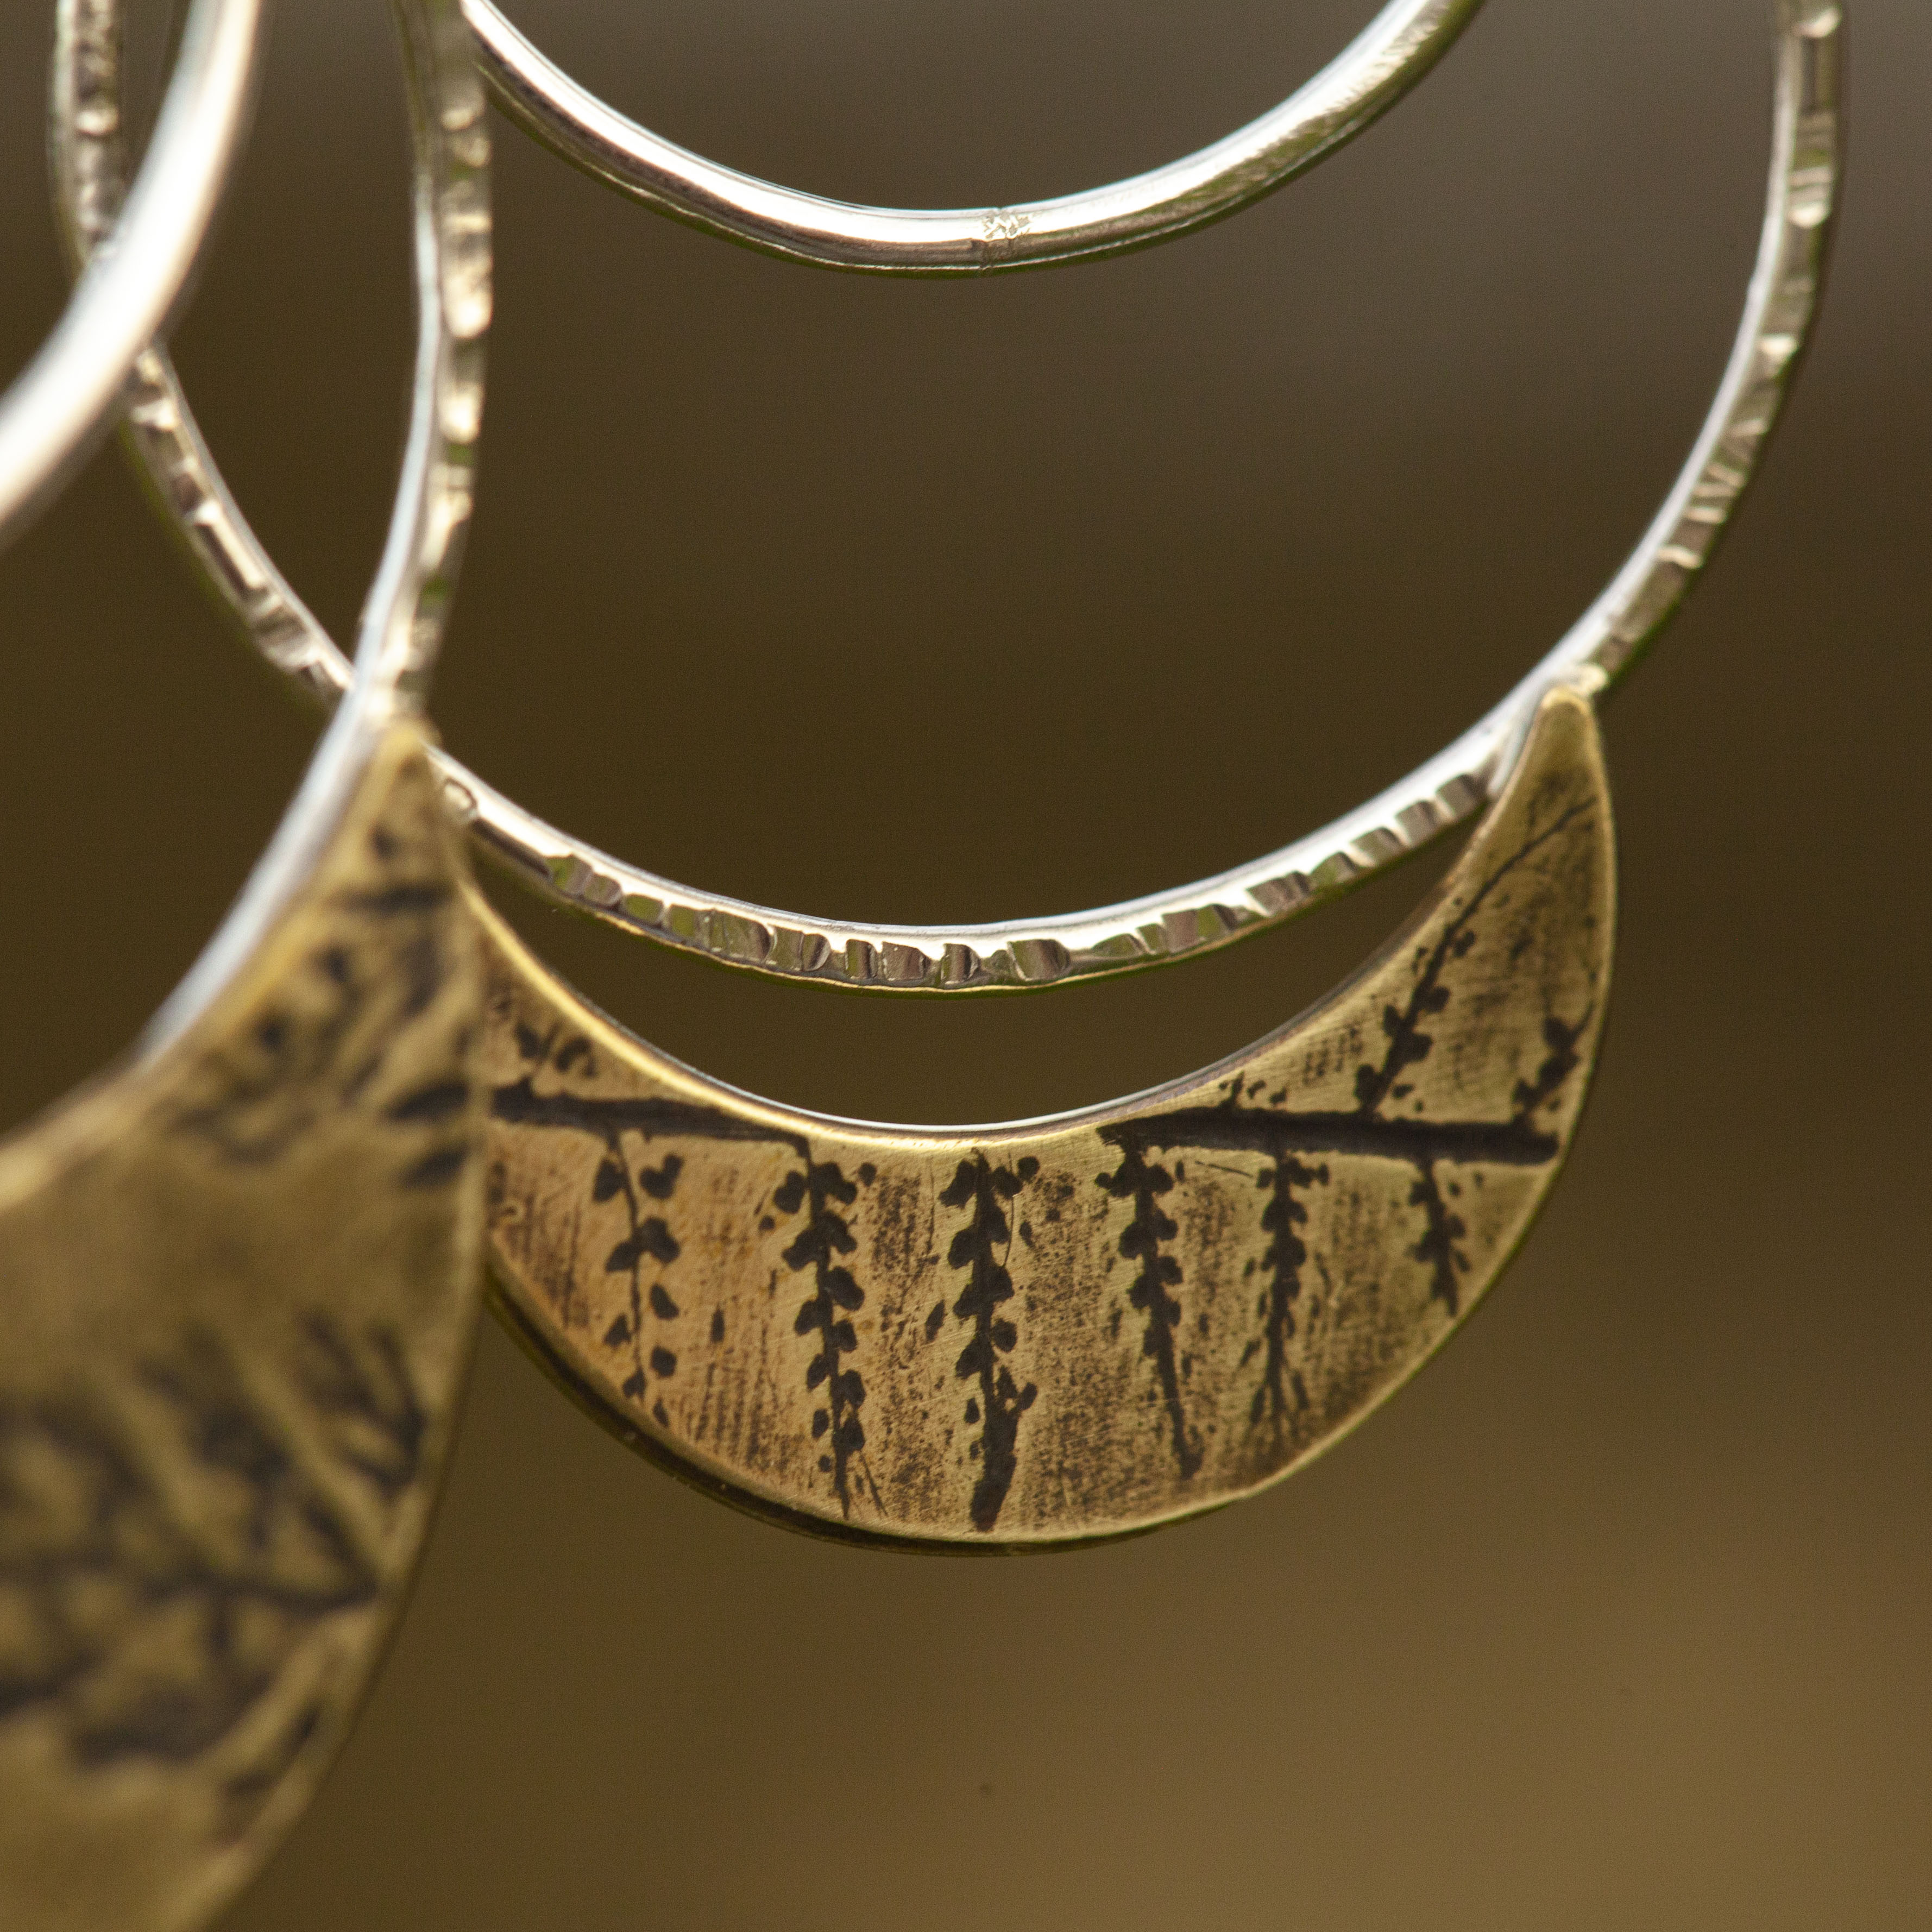 OOAK • Vegetal Moon earrings #9 • silver & brass (ready-to-ship)